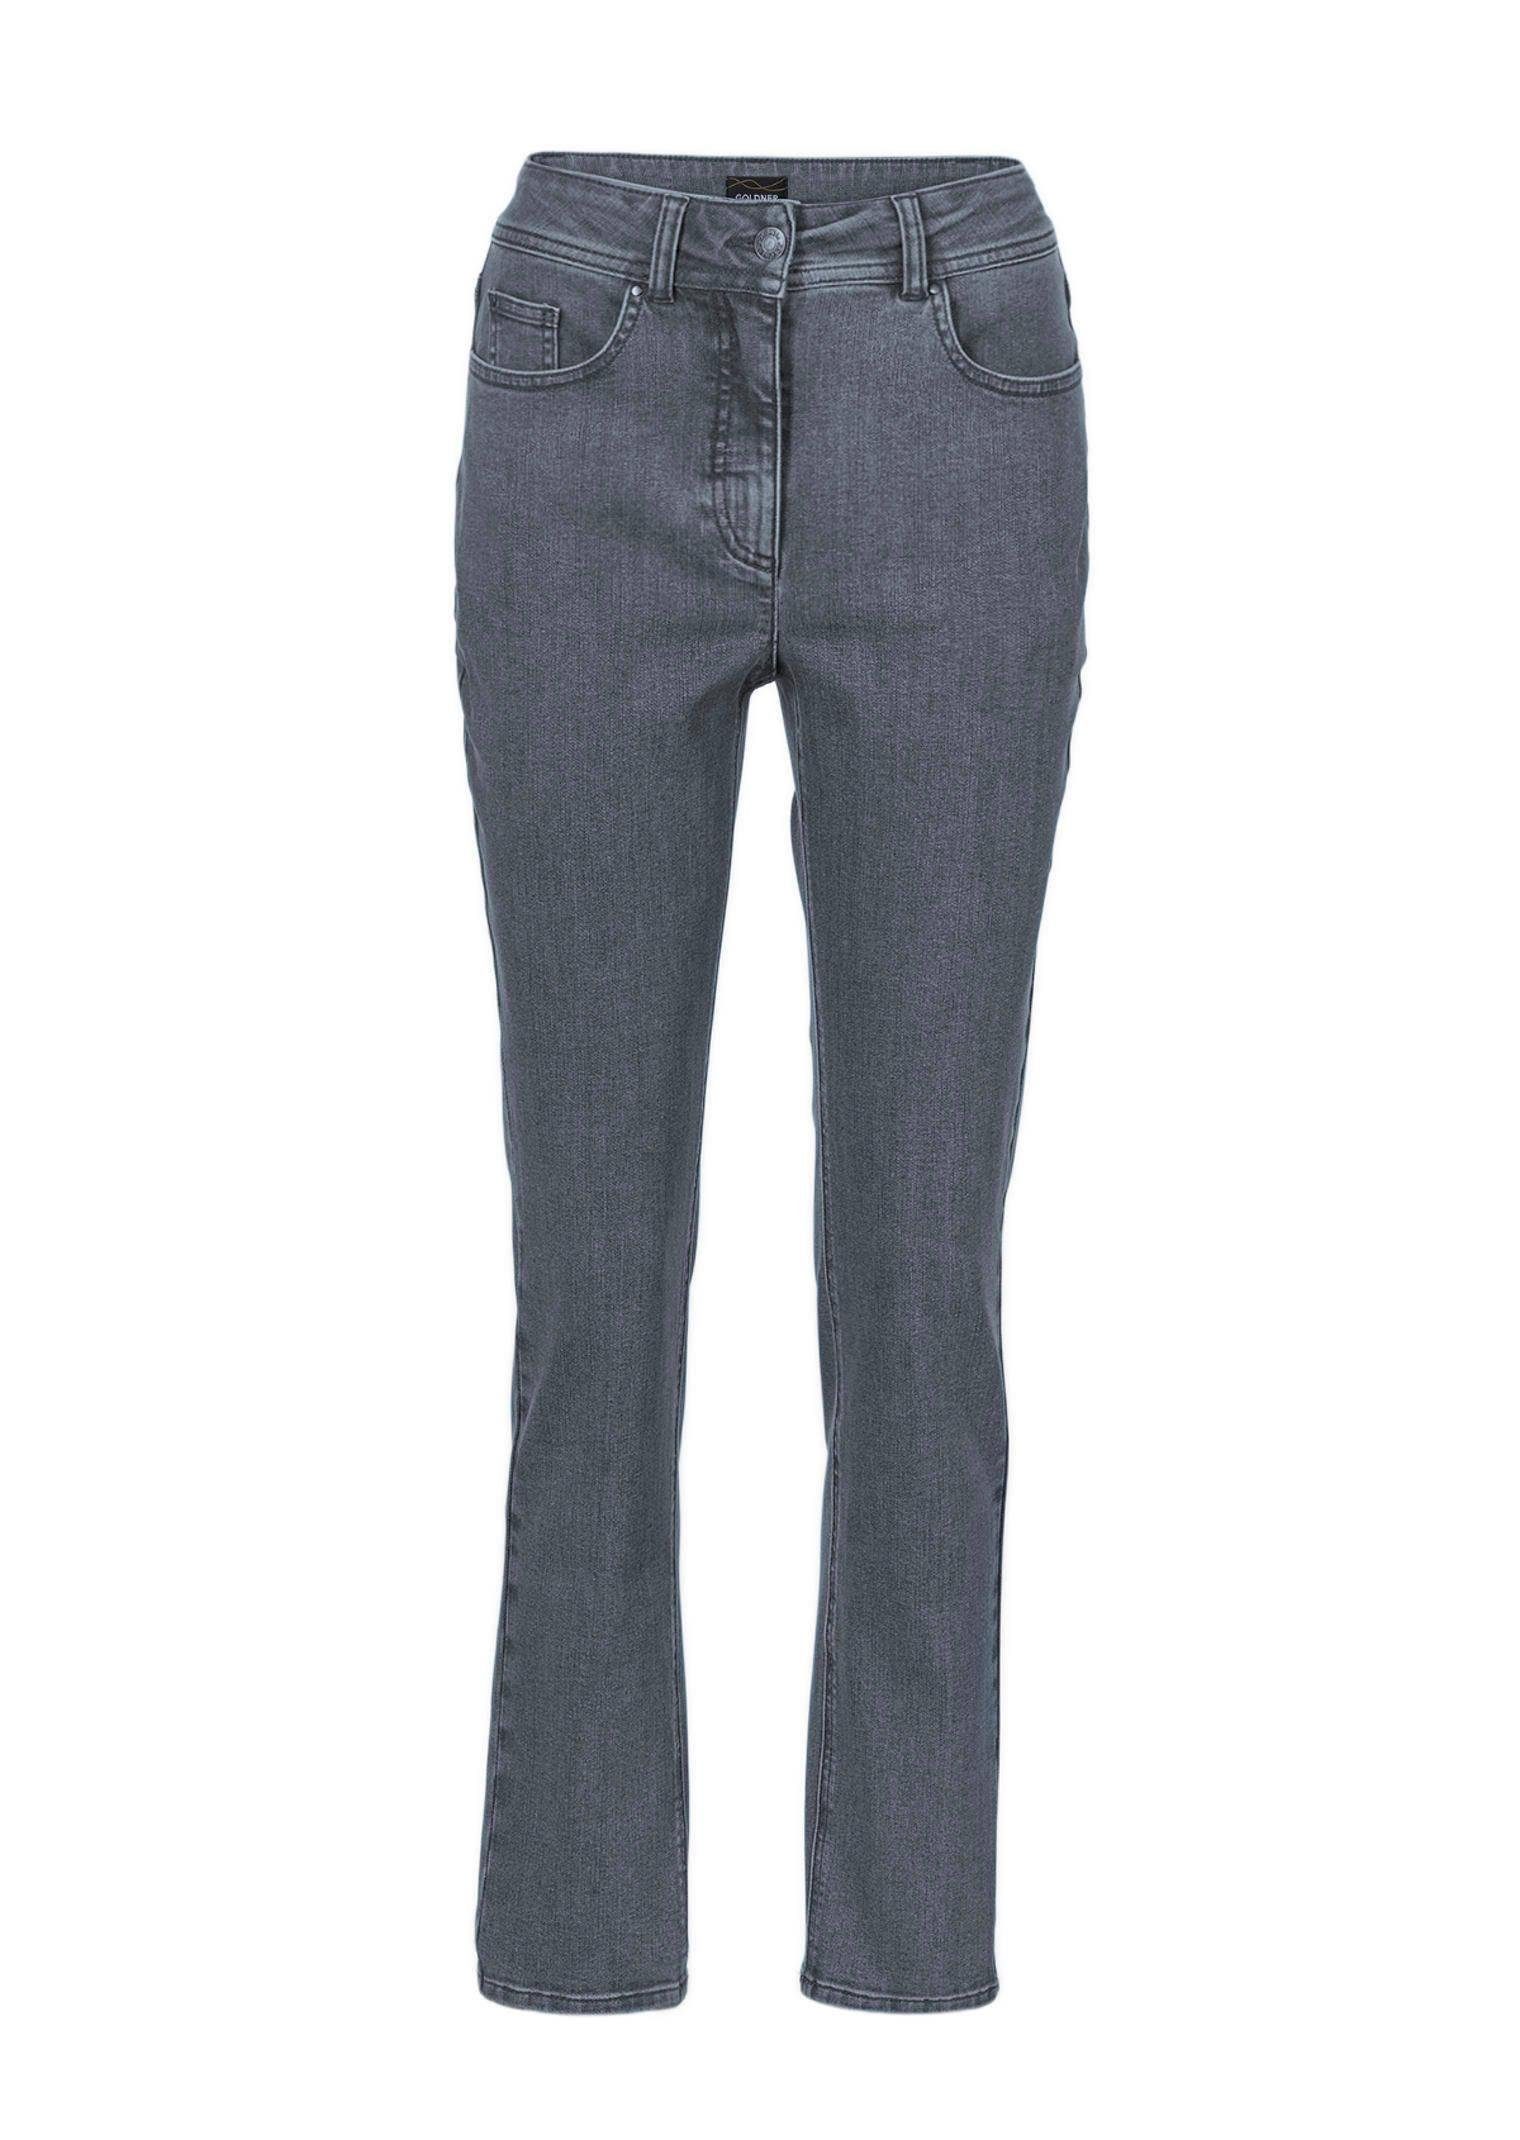 GOLDNER Bequeme Jeans Superbequeme Hose mit Bauchweg-Effekt grau